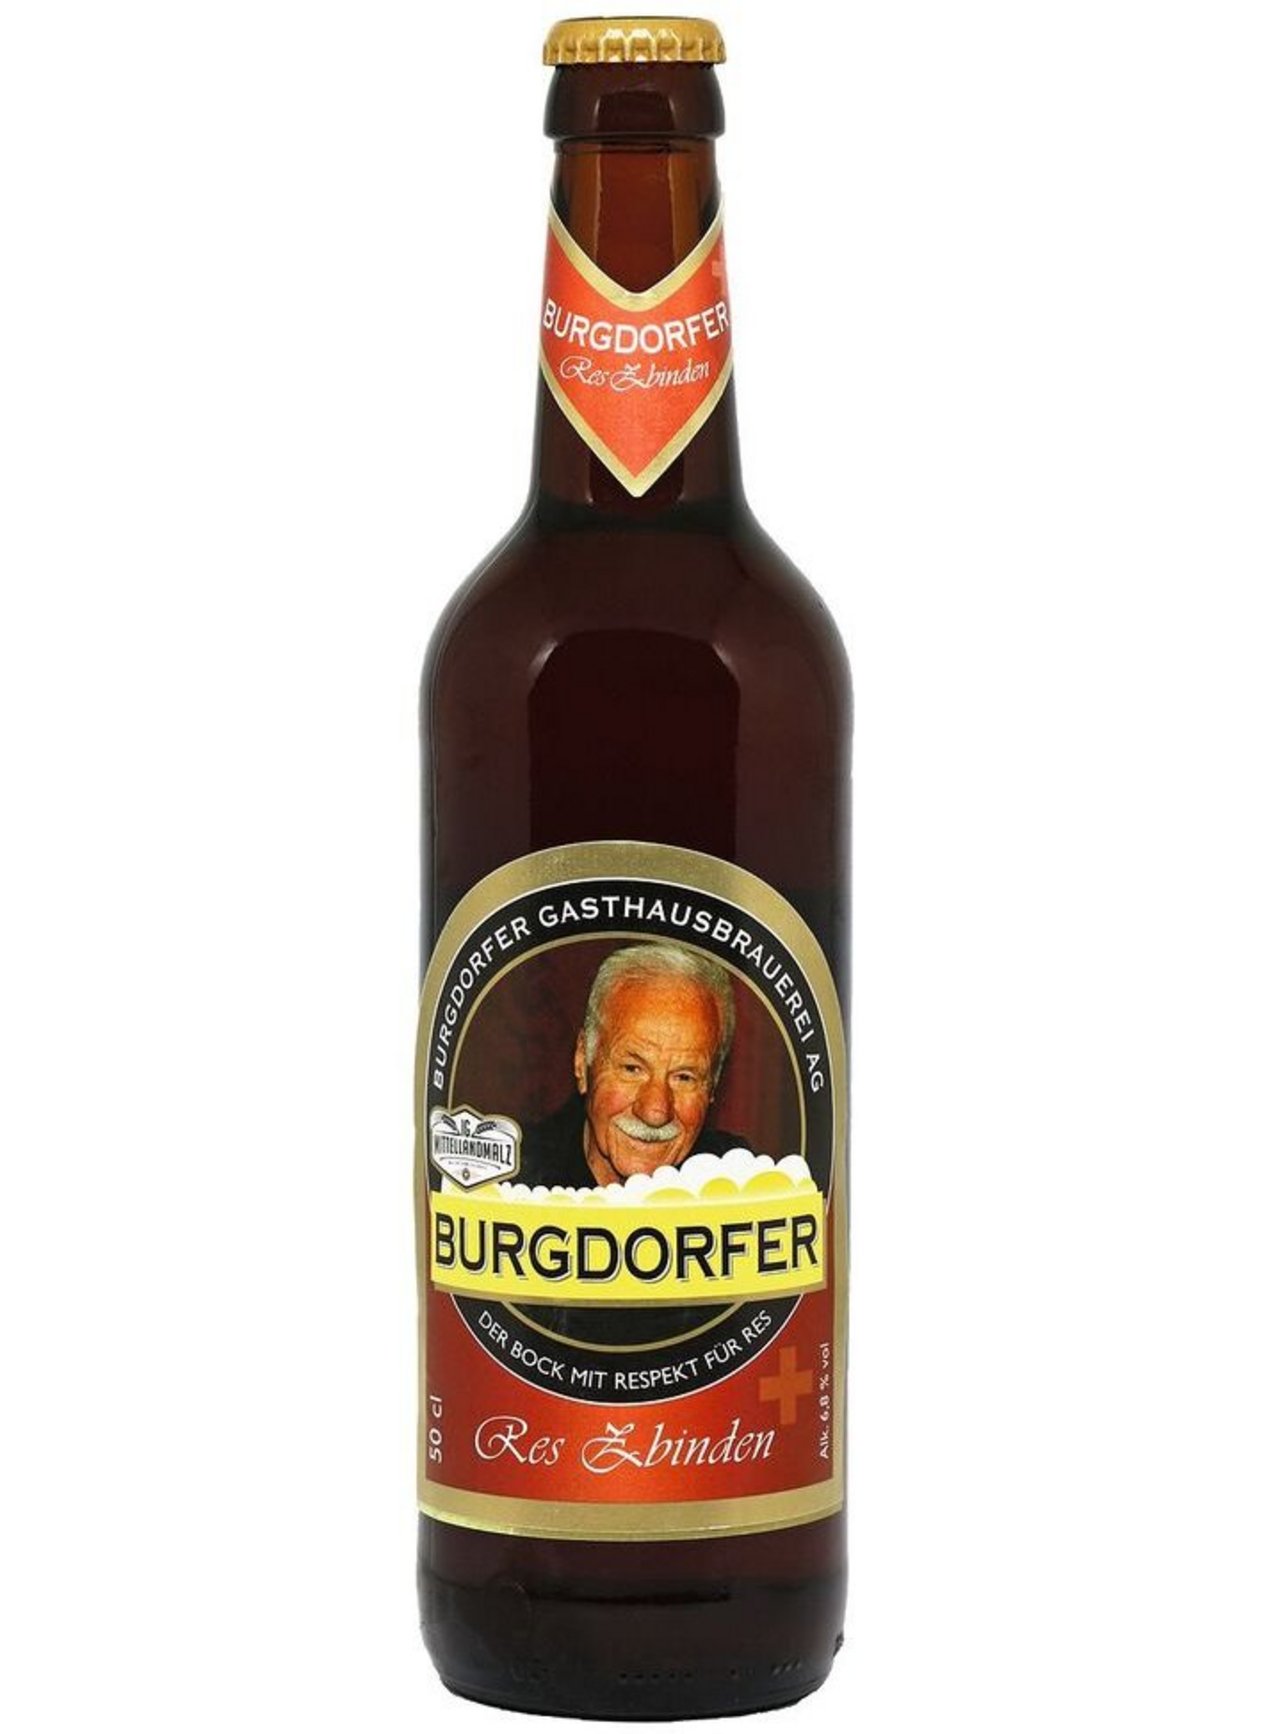 Das neue«Res Zbinden Bier»der Brauerei Burgdorfer